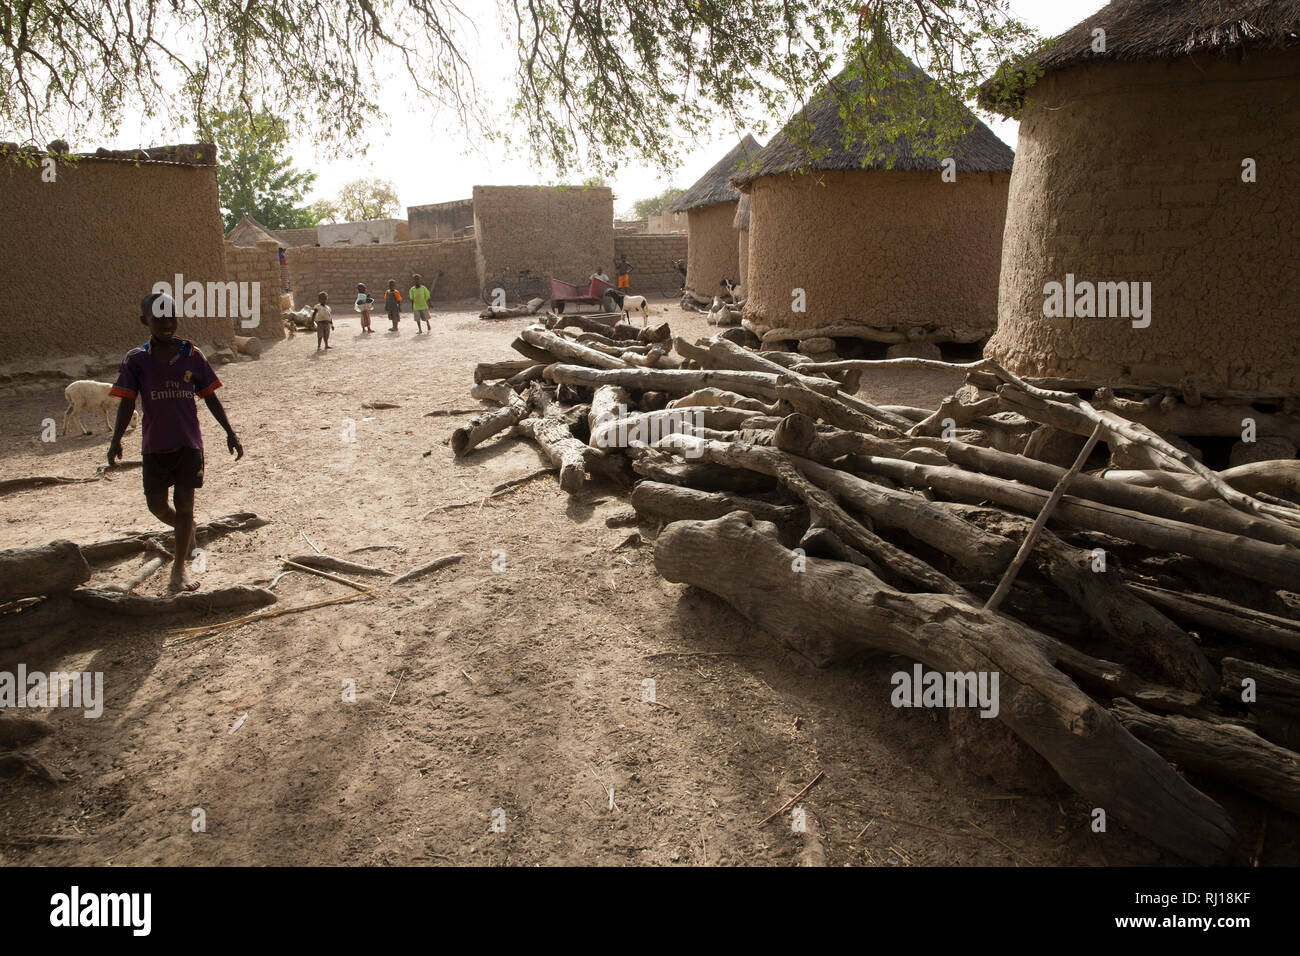 Village de samba, Province de Yako, Burkina Faso : Village La vie quotidienne à côté de Collette Guiguemde's compound. Banque D'Images